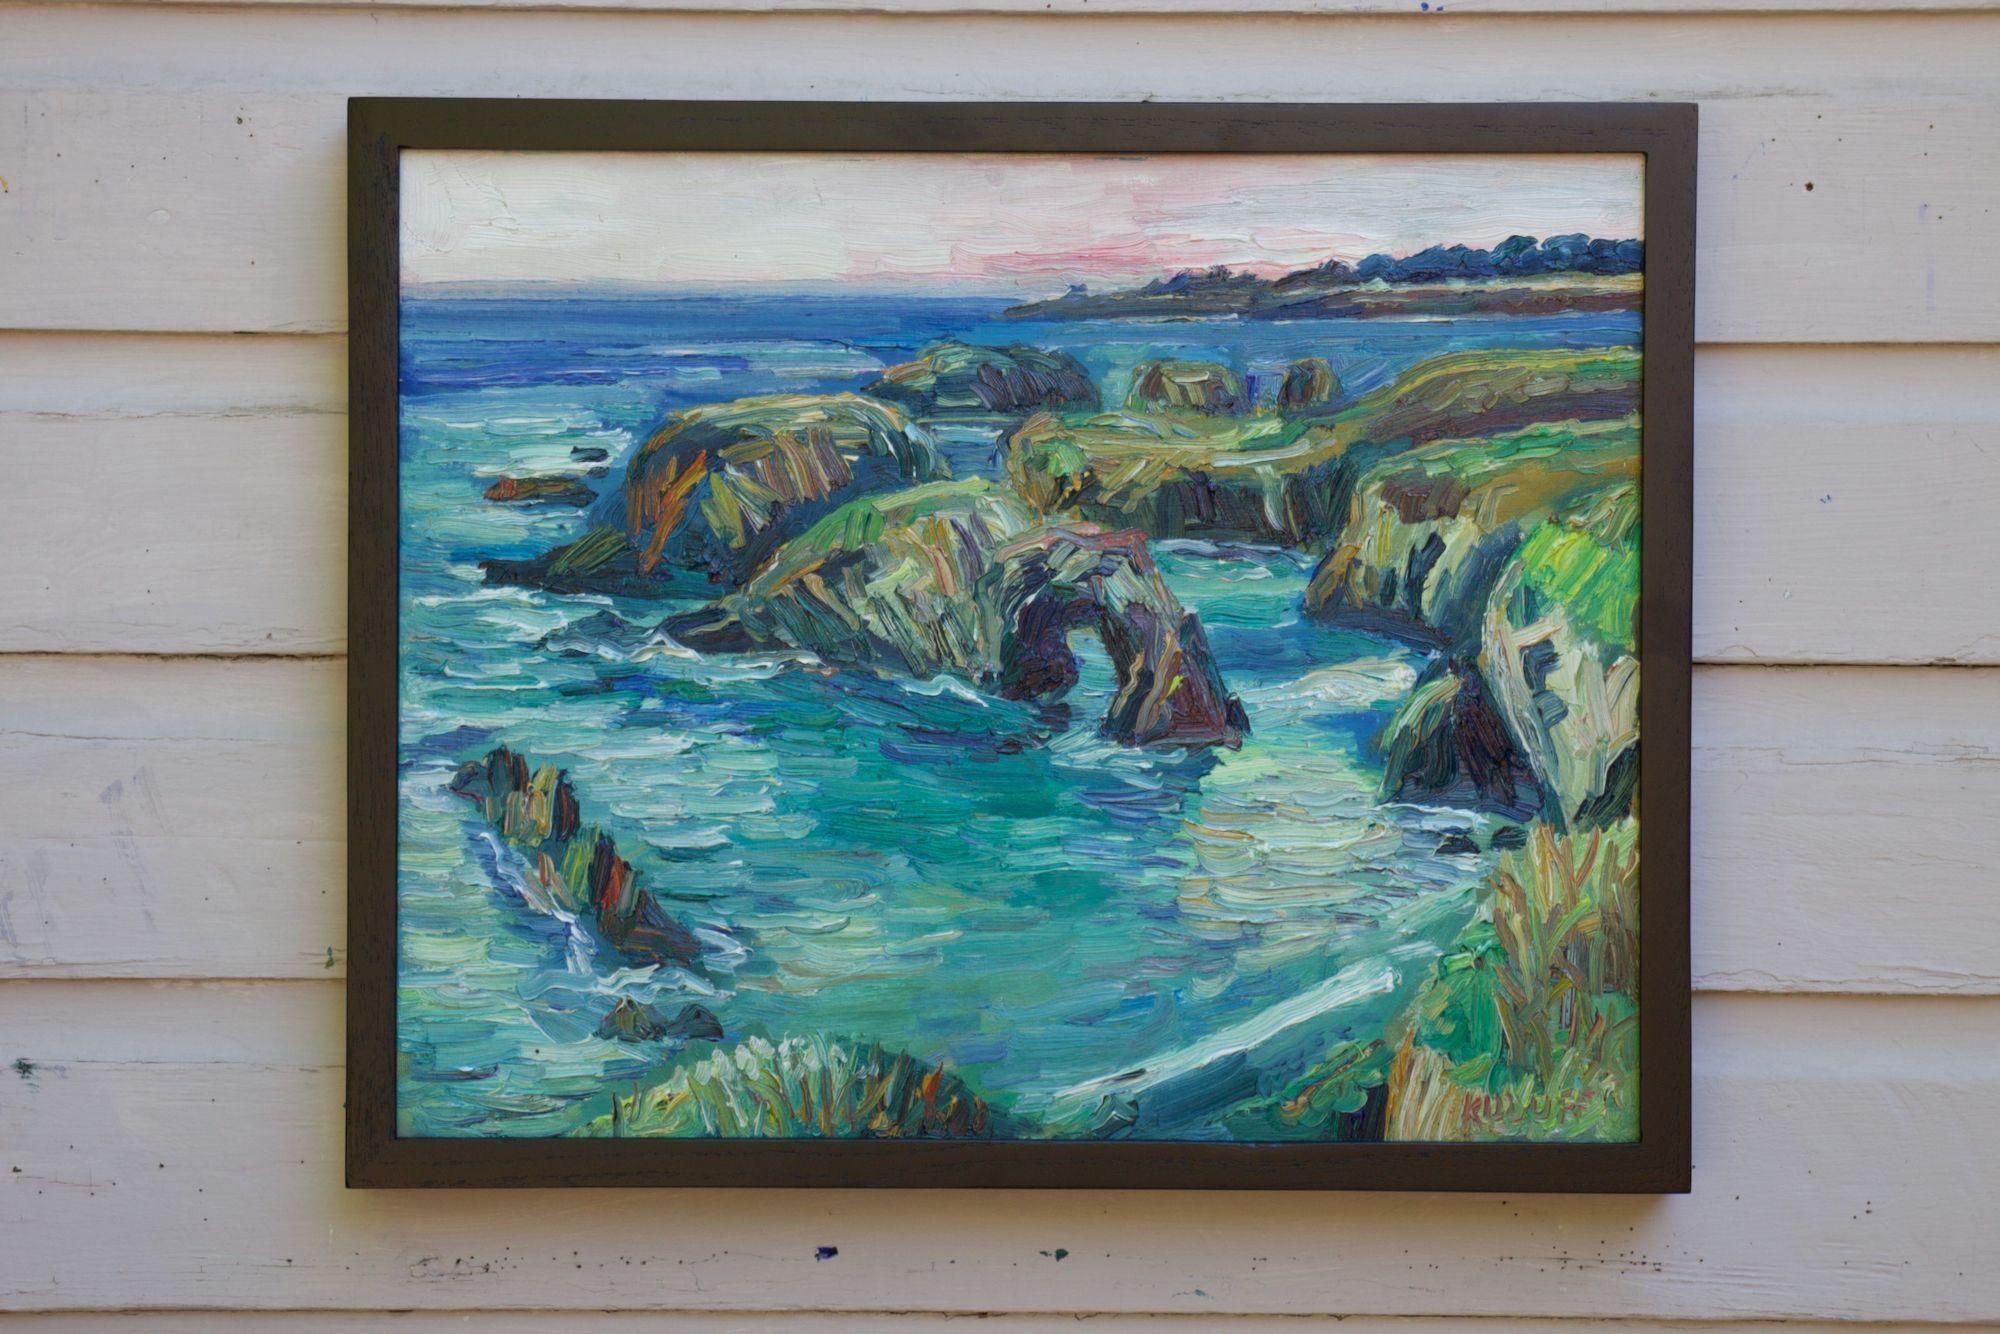 Mendocino-Küste, Gemälde, Öl auf Leinwand (Abstrakter Impressionismus), Painting, von John Kilduff